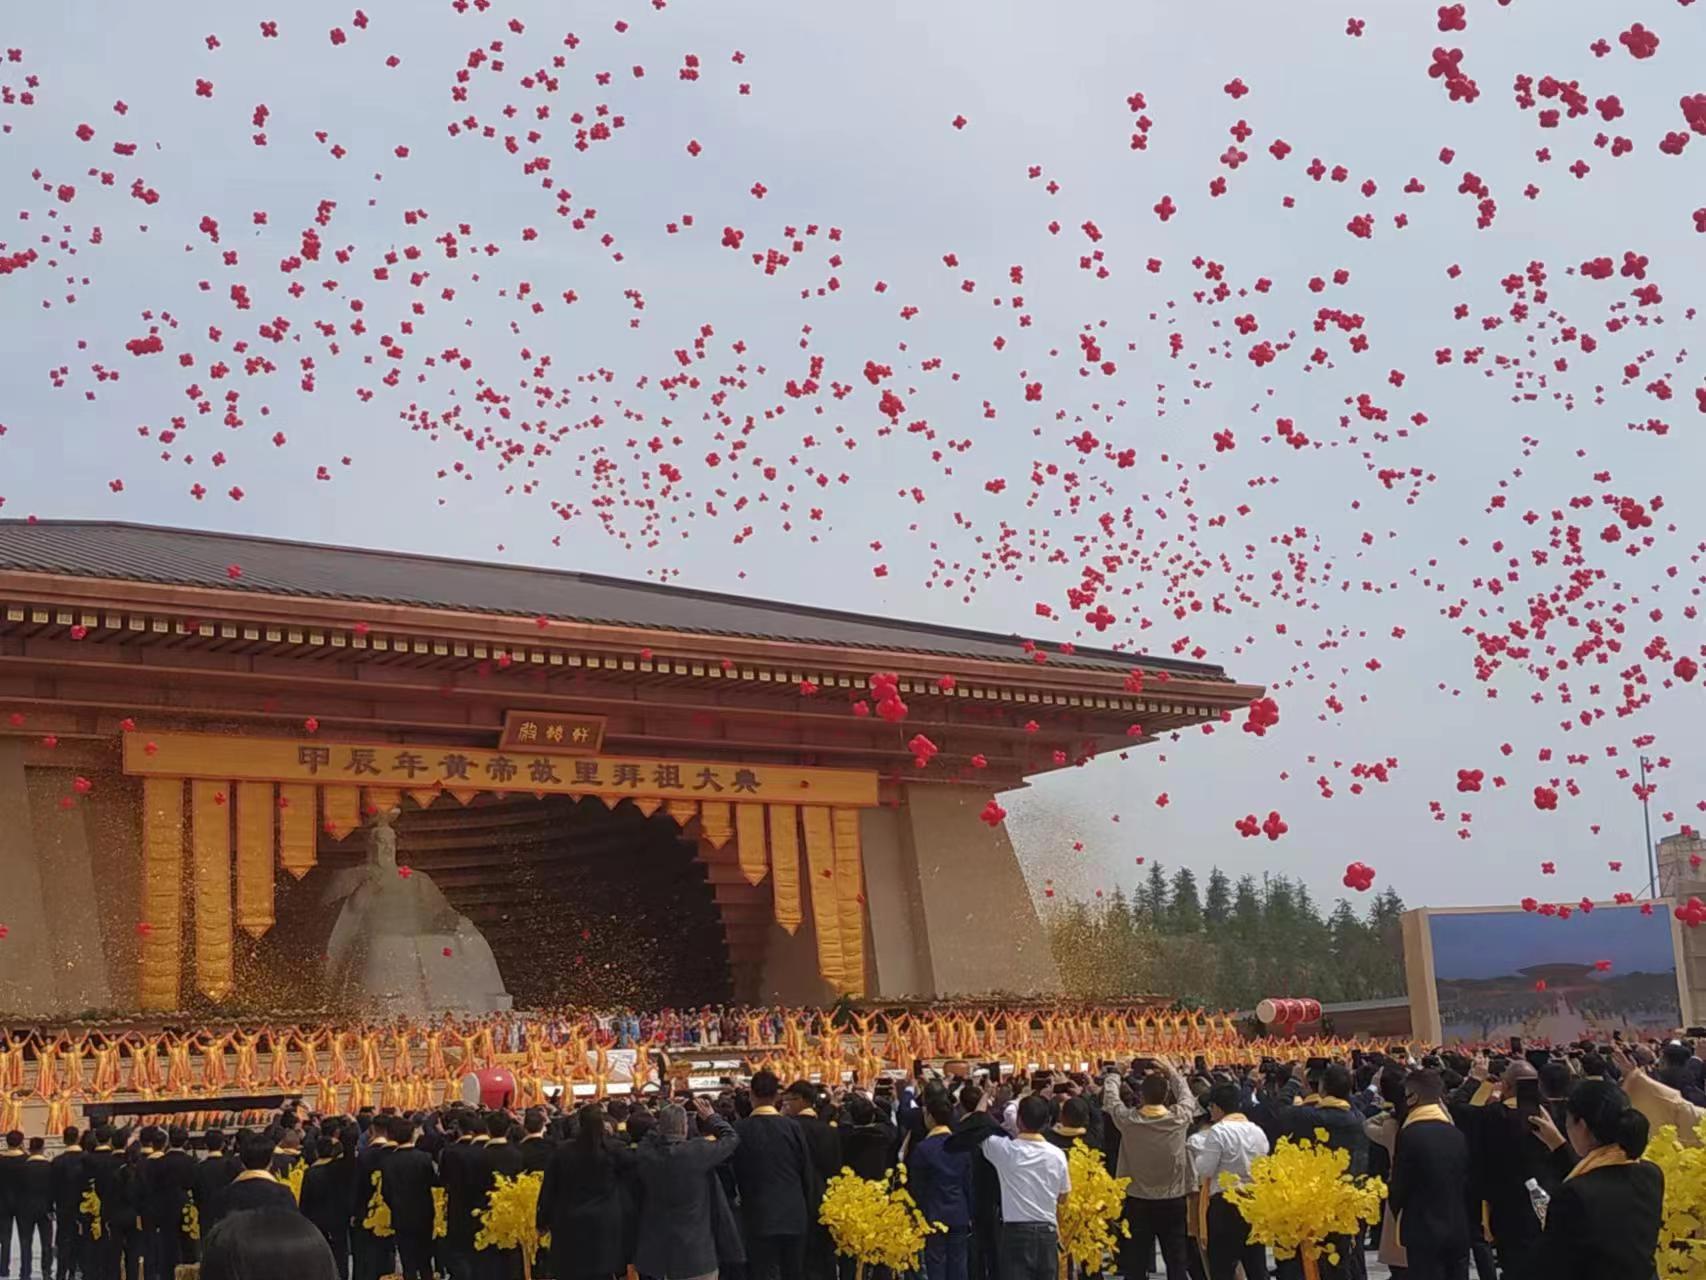 河南省黄帝故里拜祖大典盛事11日于郑州新郑黄帝故里举行，祭典最后，现场继ㄓ释放红气球、撒下金粉，同时在天空放飞龙风筝与和平鸽。（记者黄雅慧／摄影）